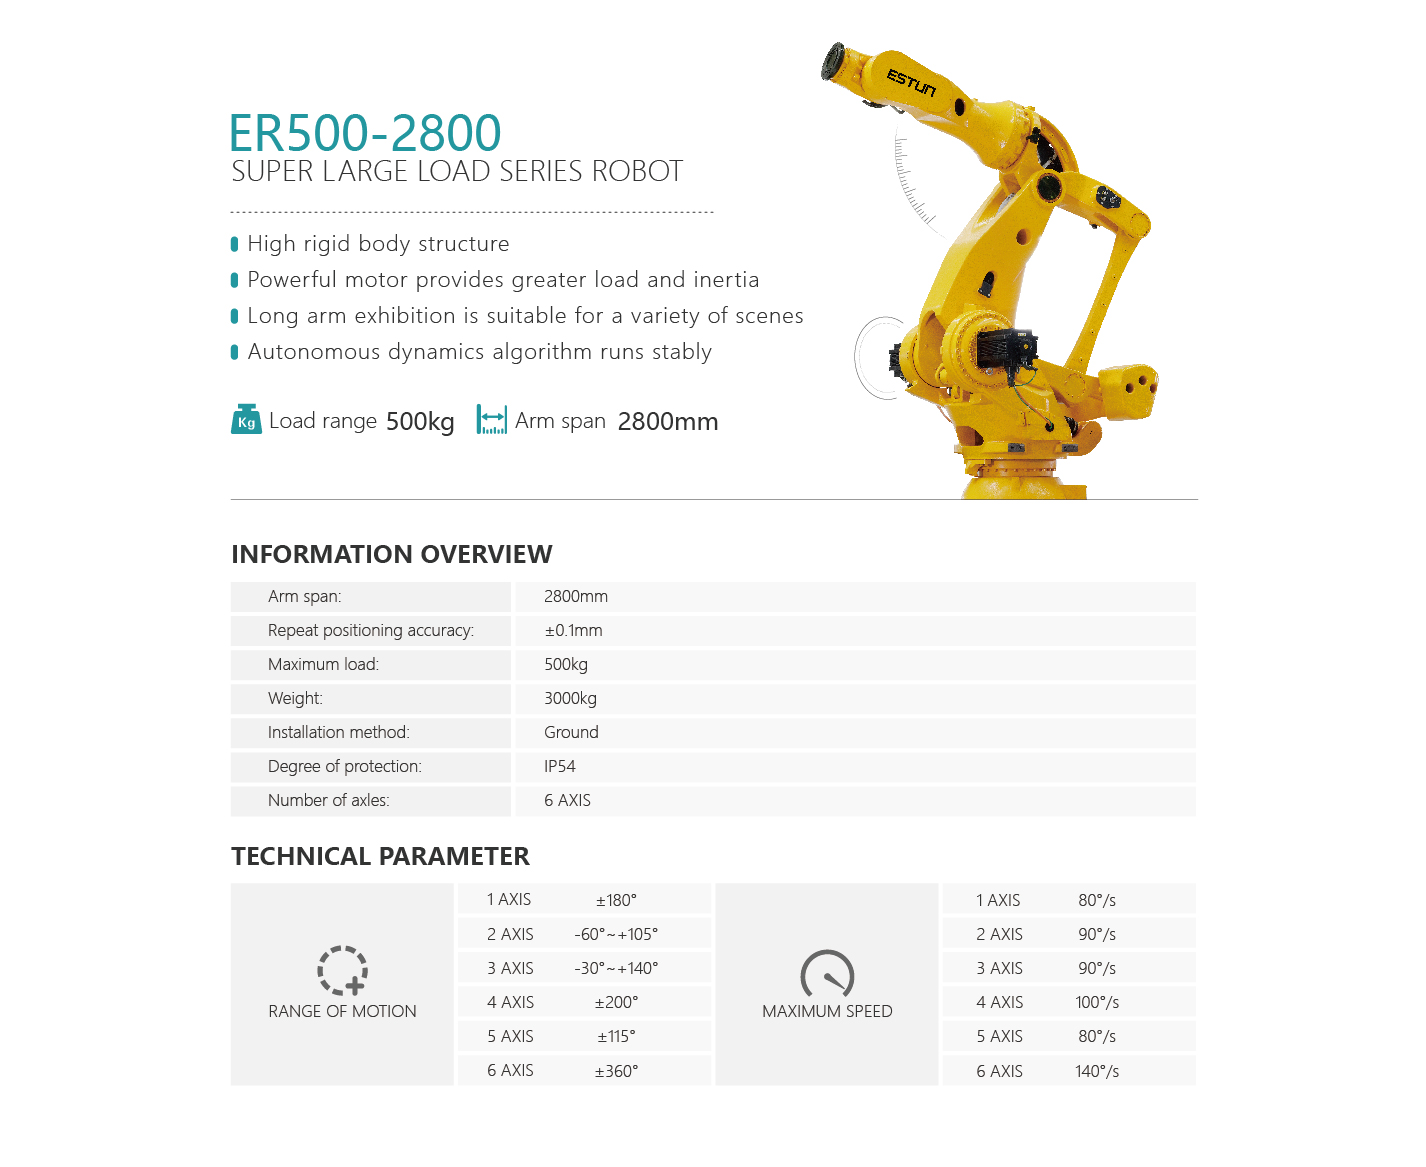 工业机器人正式版-英文版-16.jpg